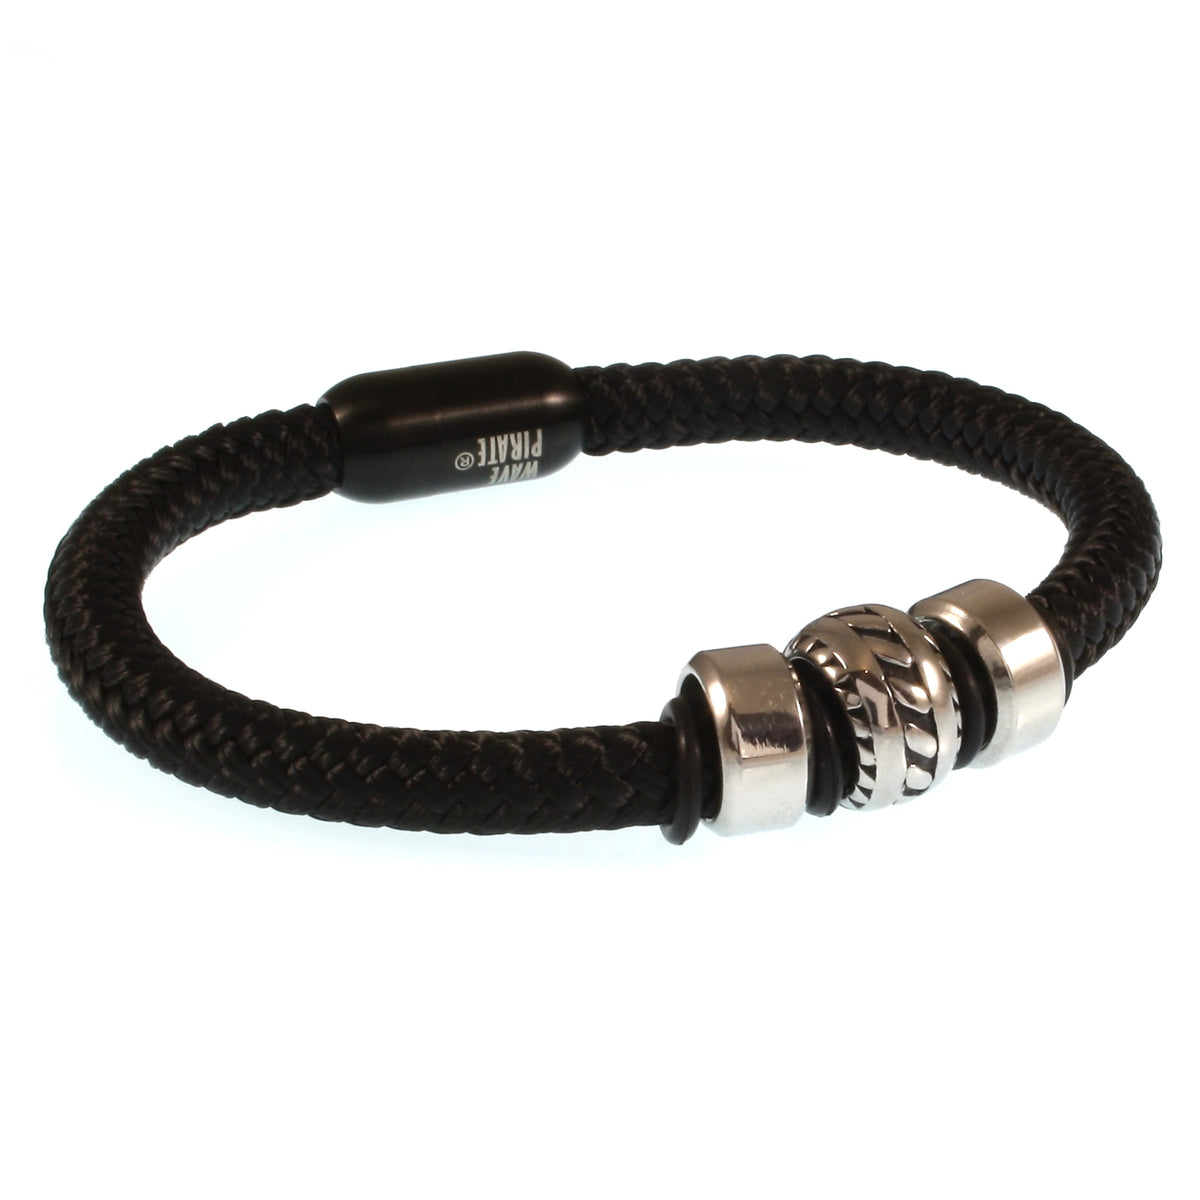 Herren-Segeltau-armband-steel-schwarz-geflochten-Edelstahlverschluss-vorn-wavepirate-shop-r